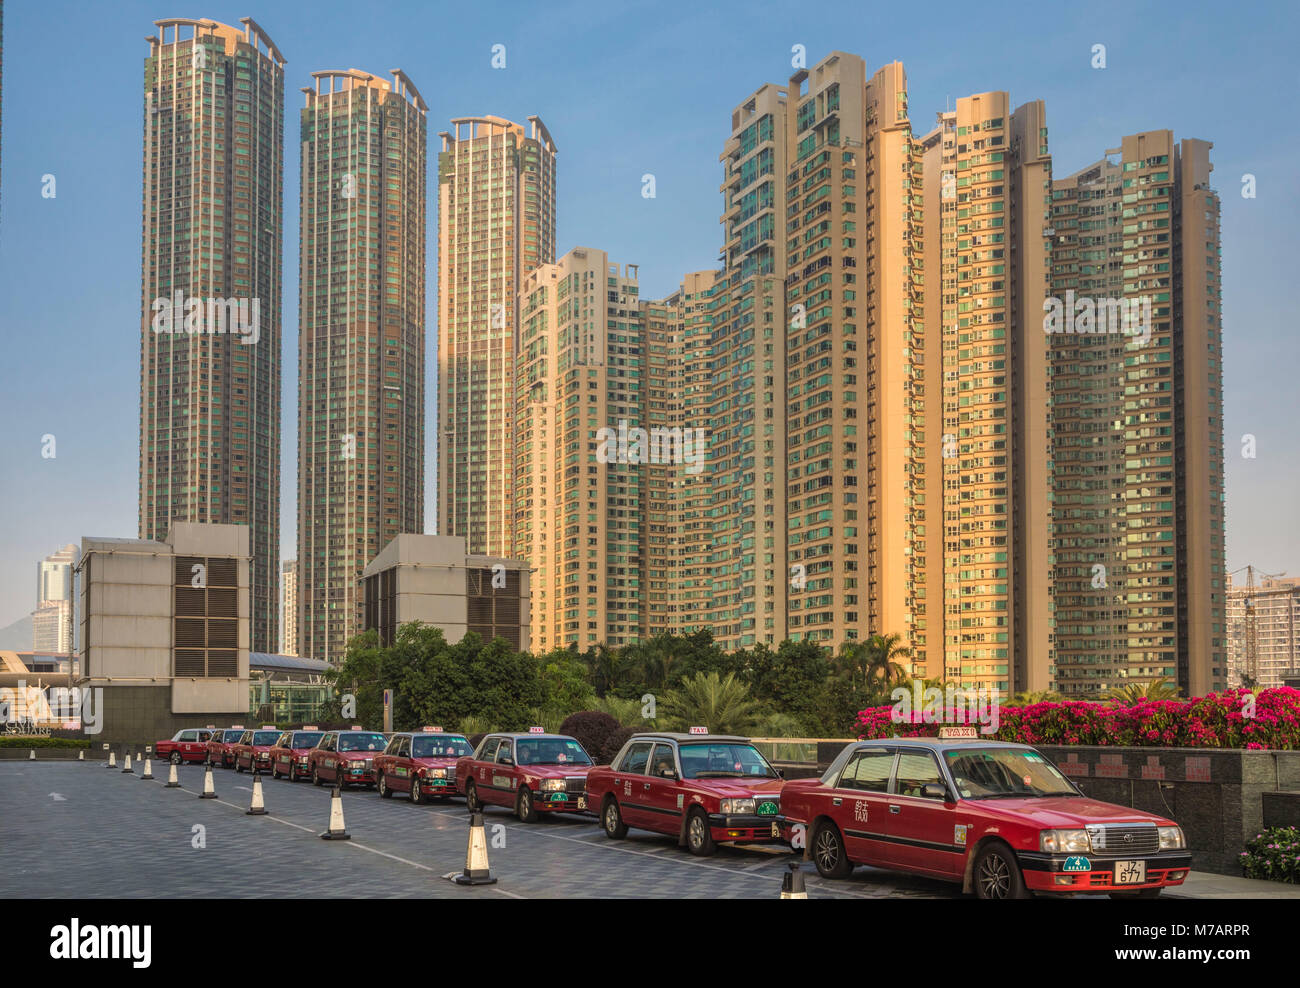 La ville de Hong Kong Kowloon new development District Banque D'Images